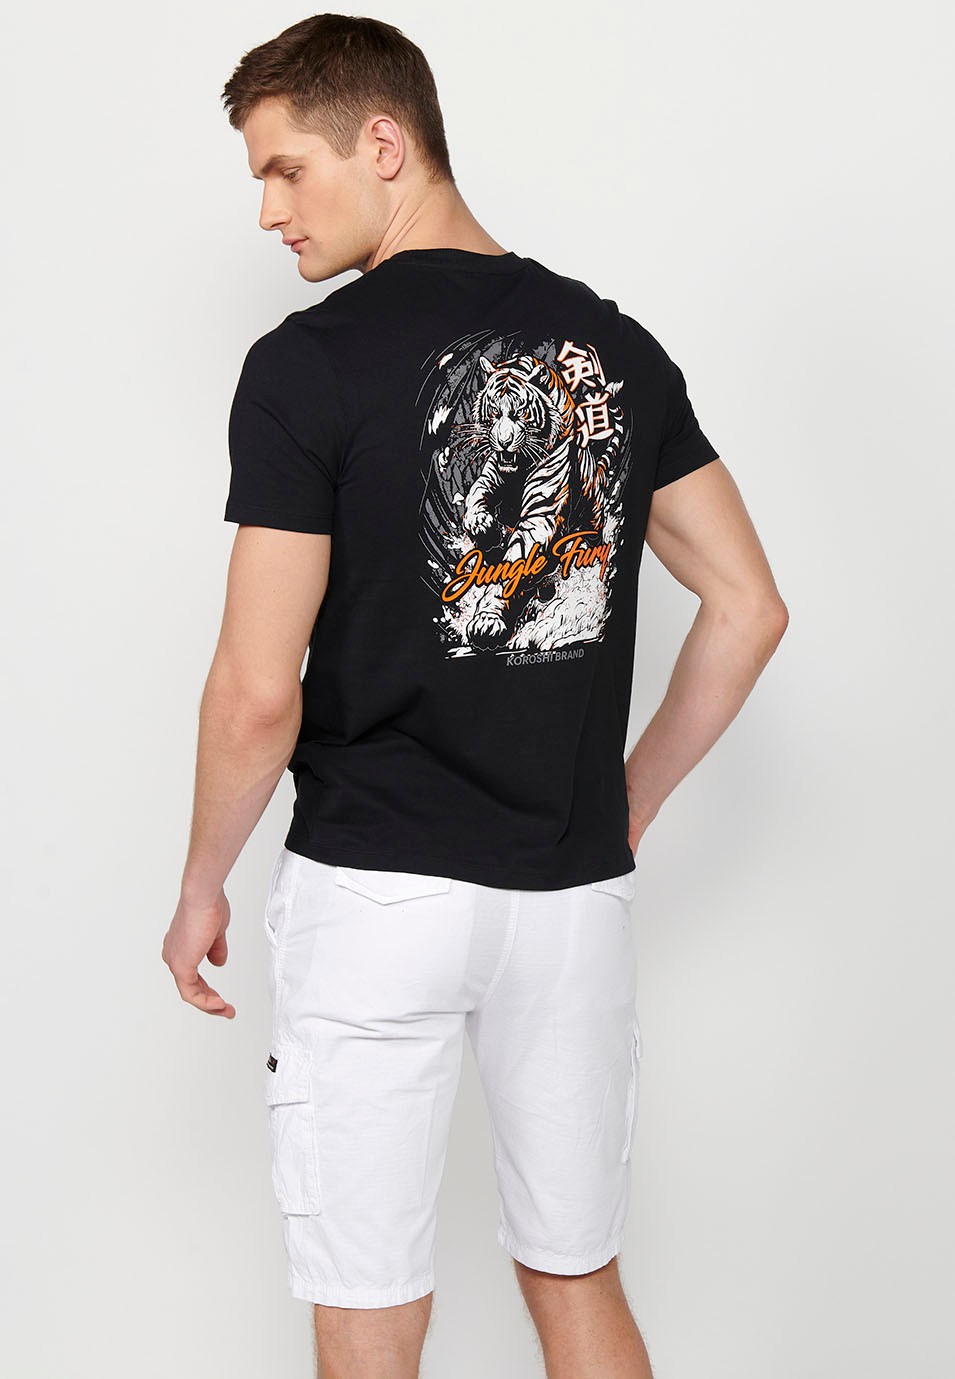 Kurzärmeliges Baumwoll-T-Shirt mit Dschungel-Tigger-Aufdruck auf dem Rücken, schwarze Farbe für Herren